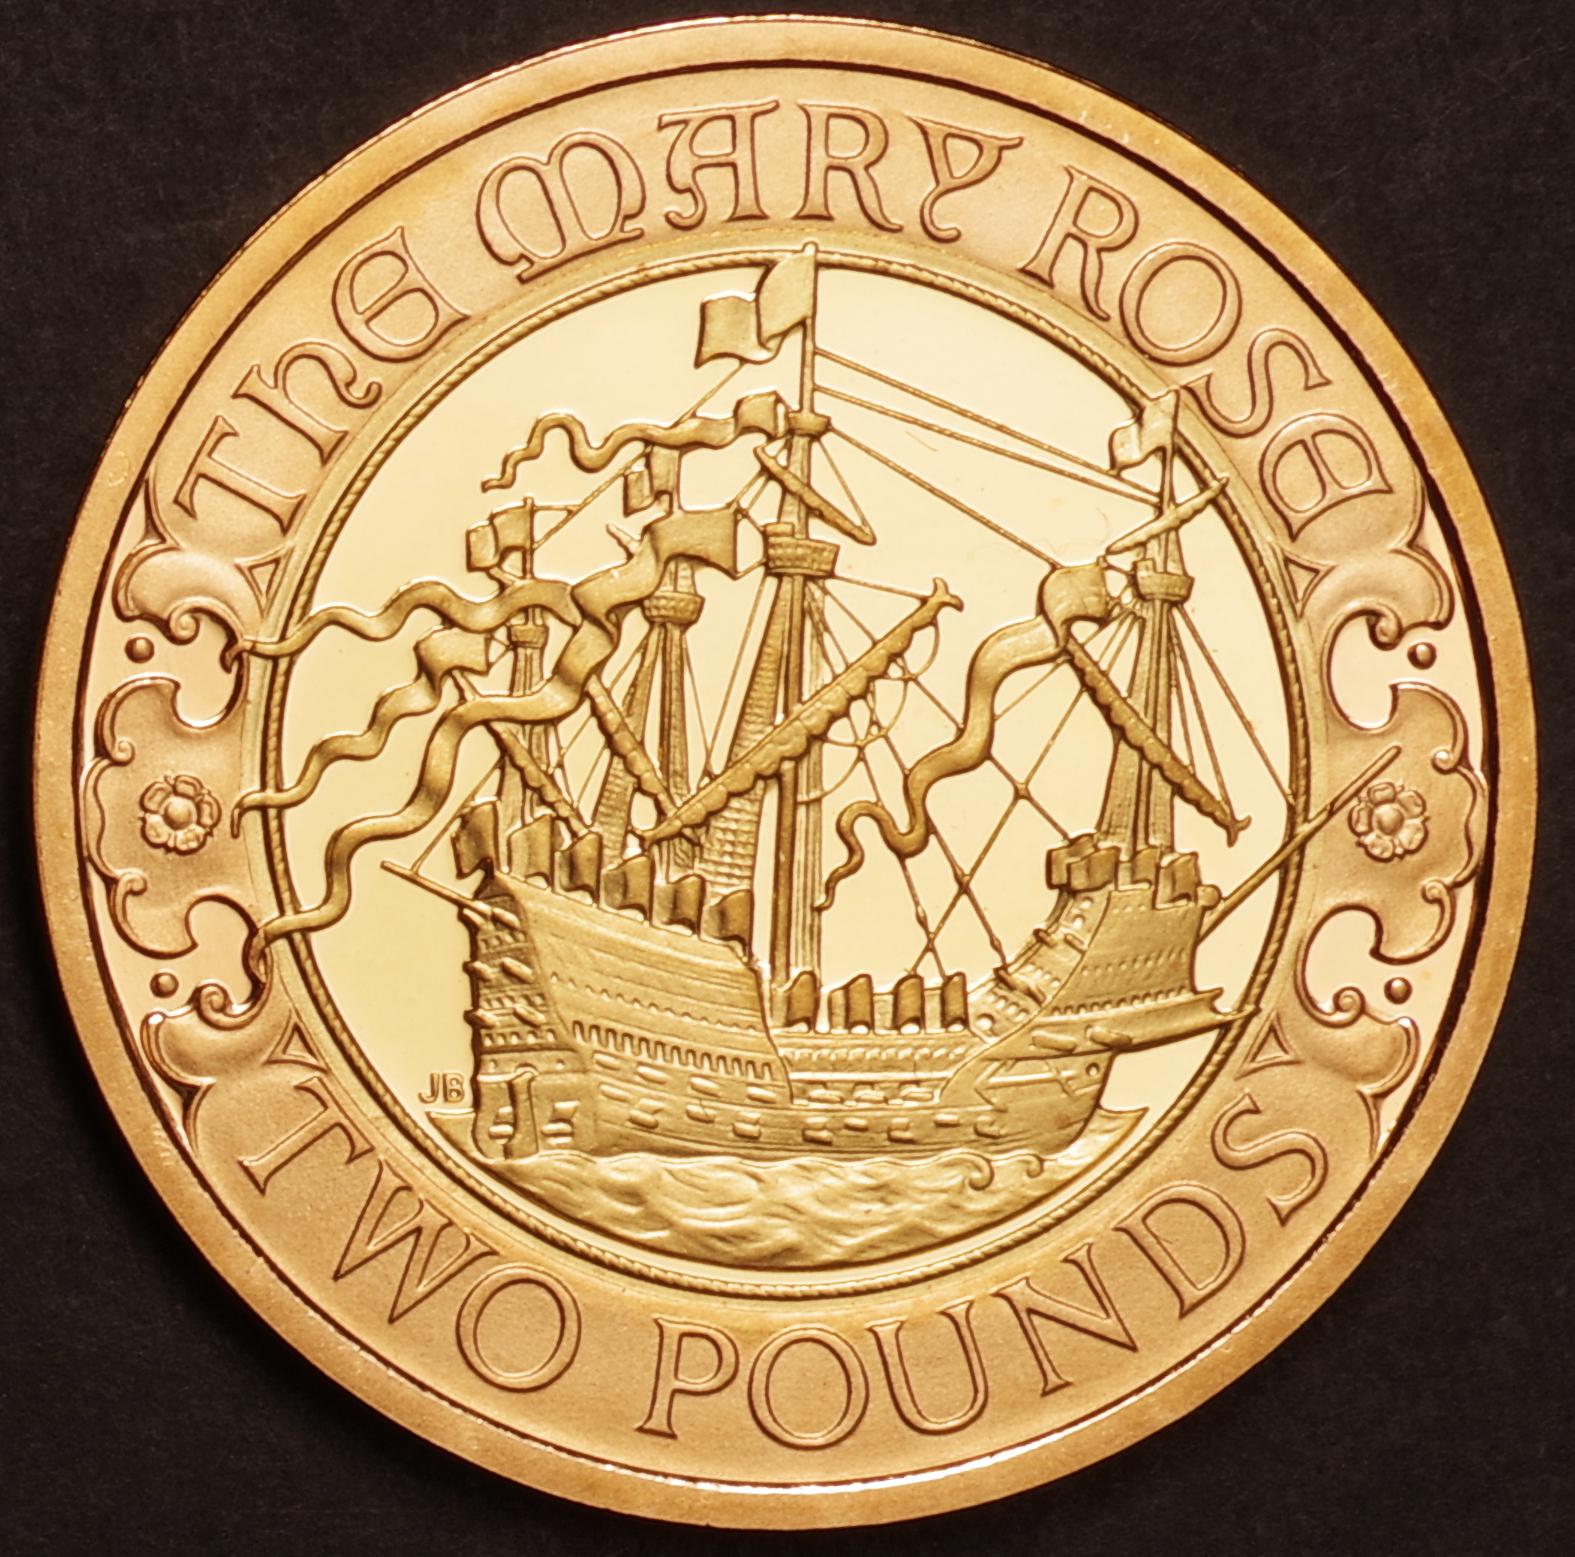 イギリス 2011 メアリー・ローズ号 就航 500周年 記念硬貨